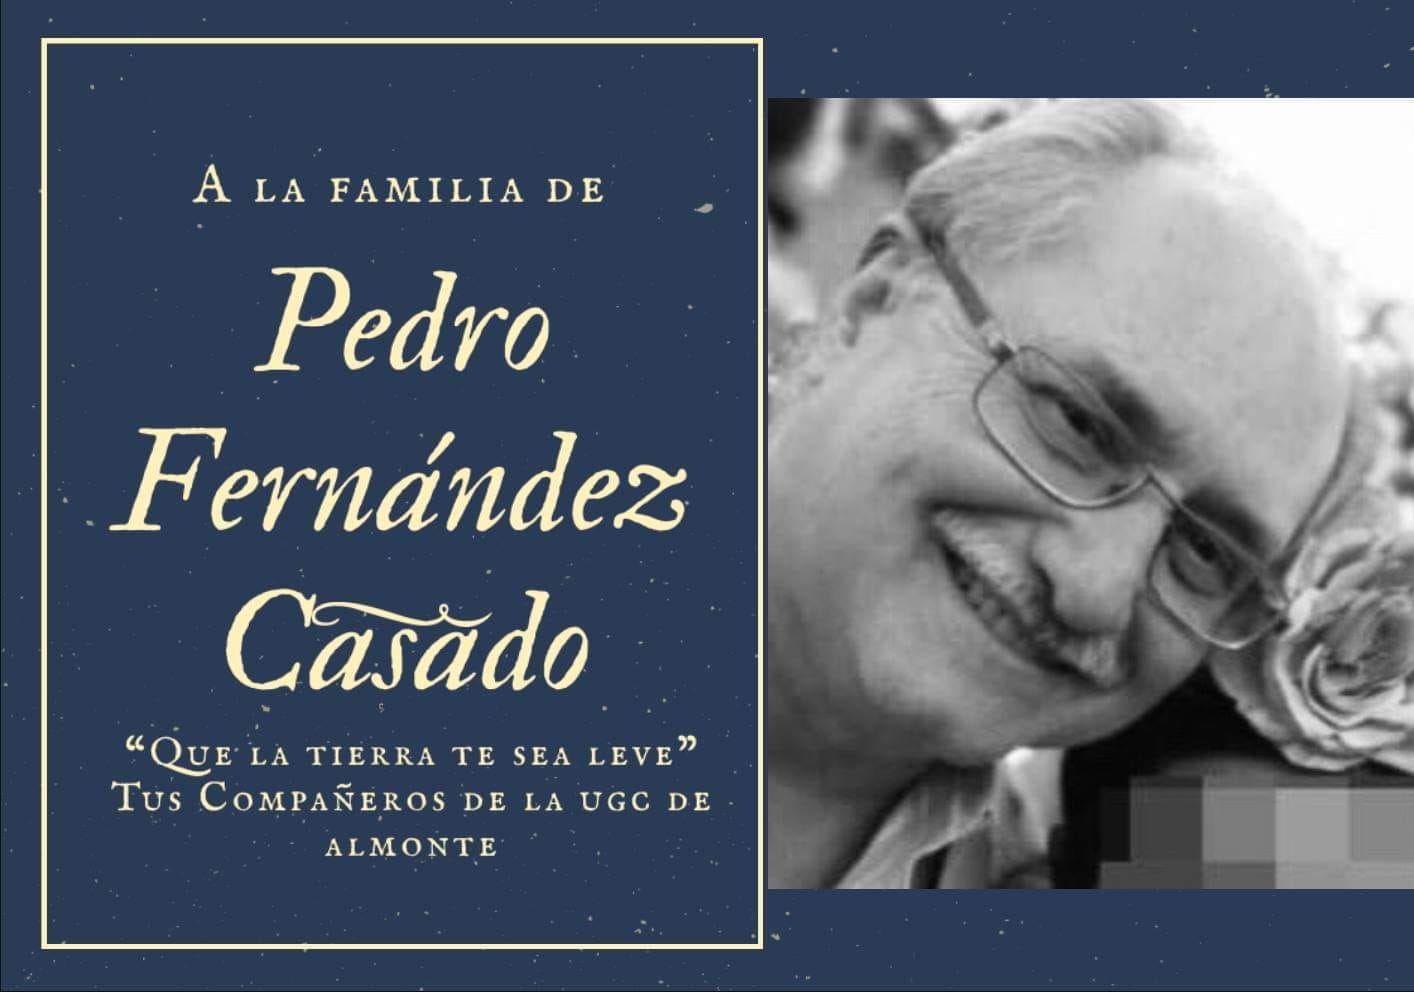 Condolencias por el doctor Fernández Casado, desde Almonte.